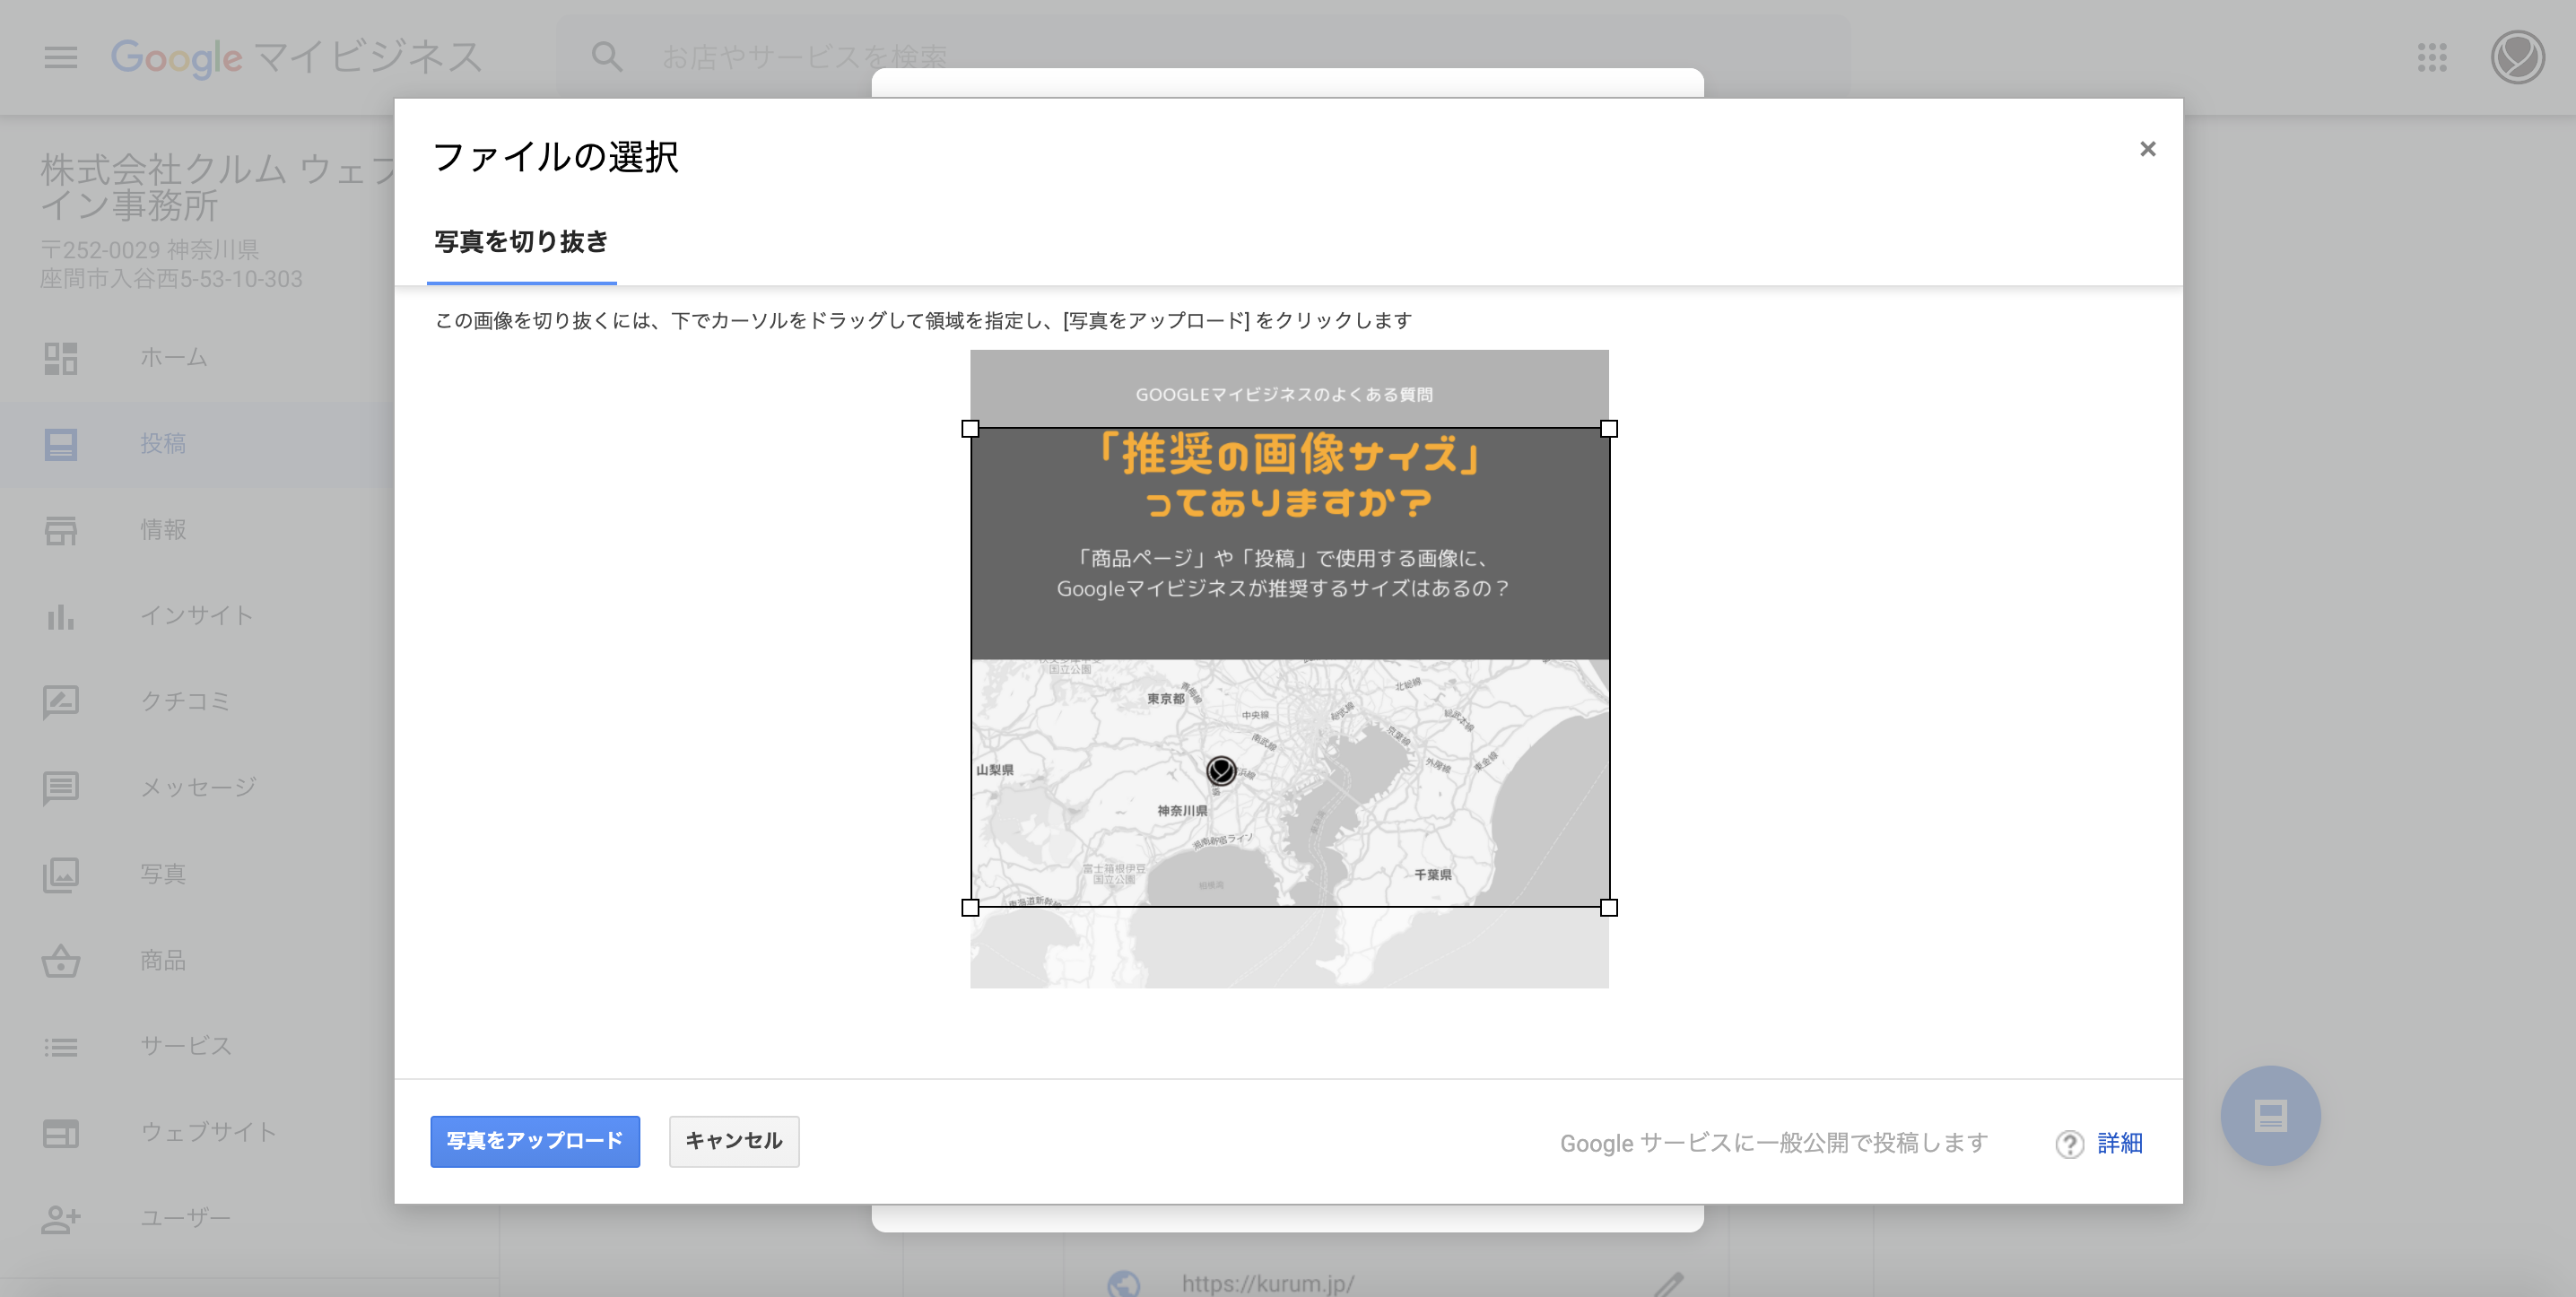 Googleマイビジネスで使用する画像の推奨サイズとは 神奈川県座間市のデザイン事務所 株式会社クルム